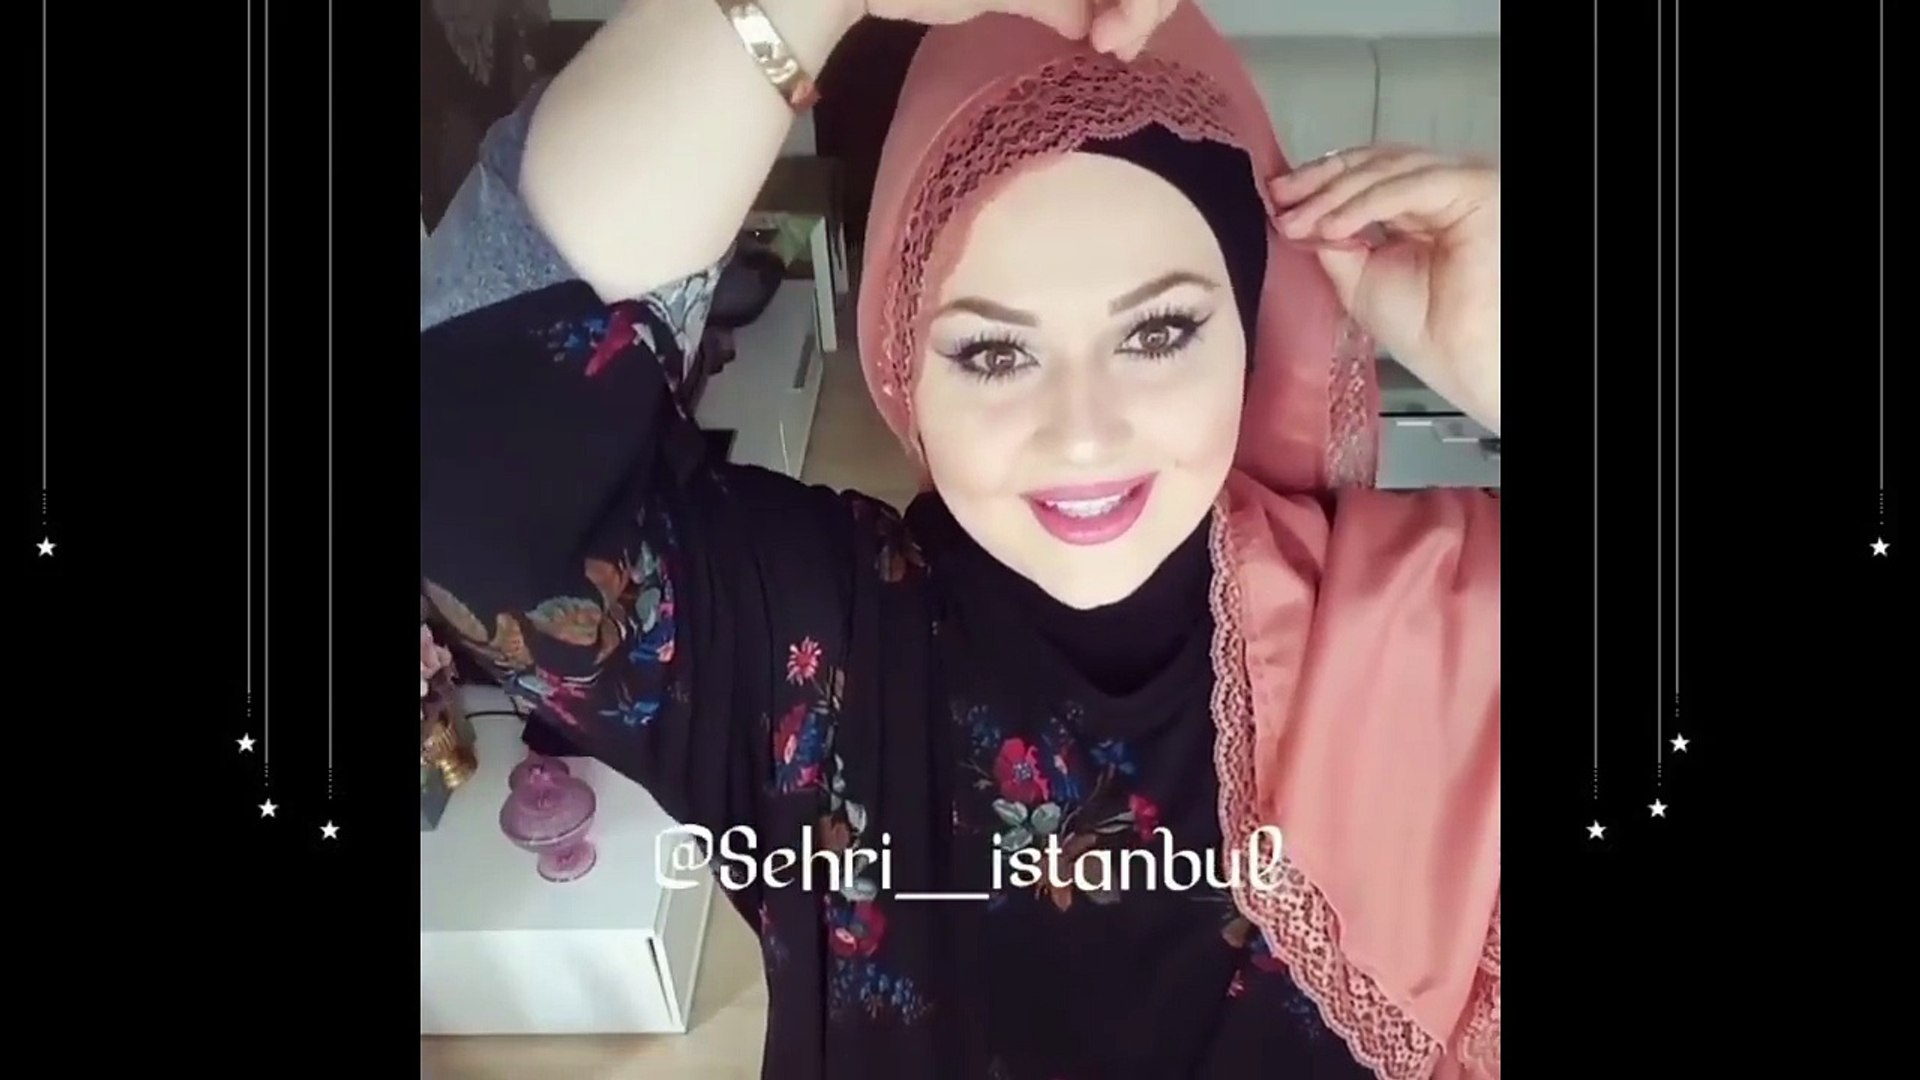 Dürre Aufregung Nähmaschine طريقة وضع الحجاب في الاعراس stark redaktionell  Wagen